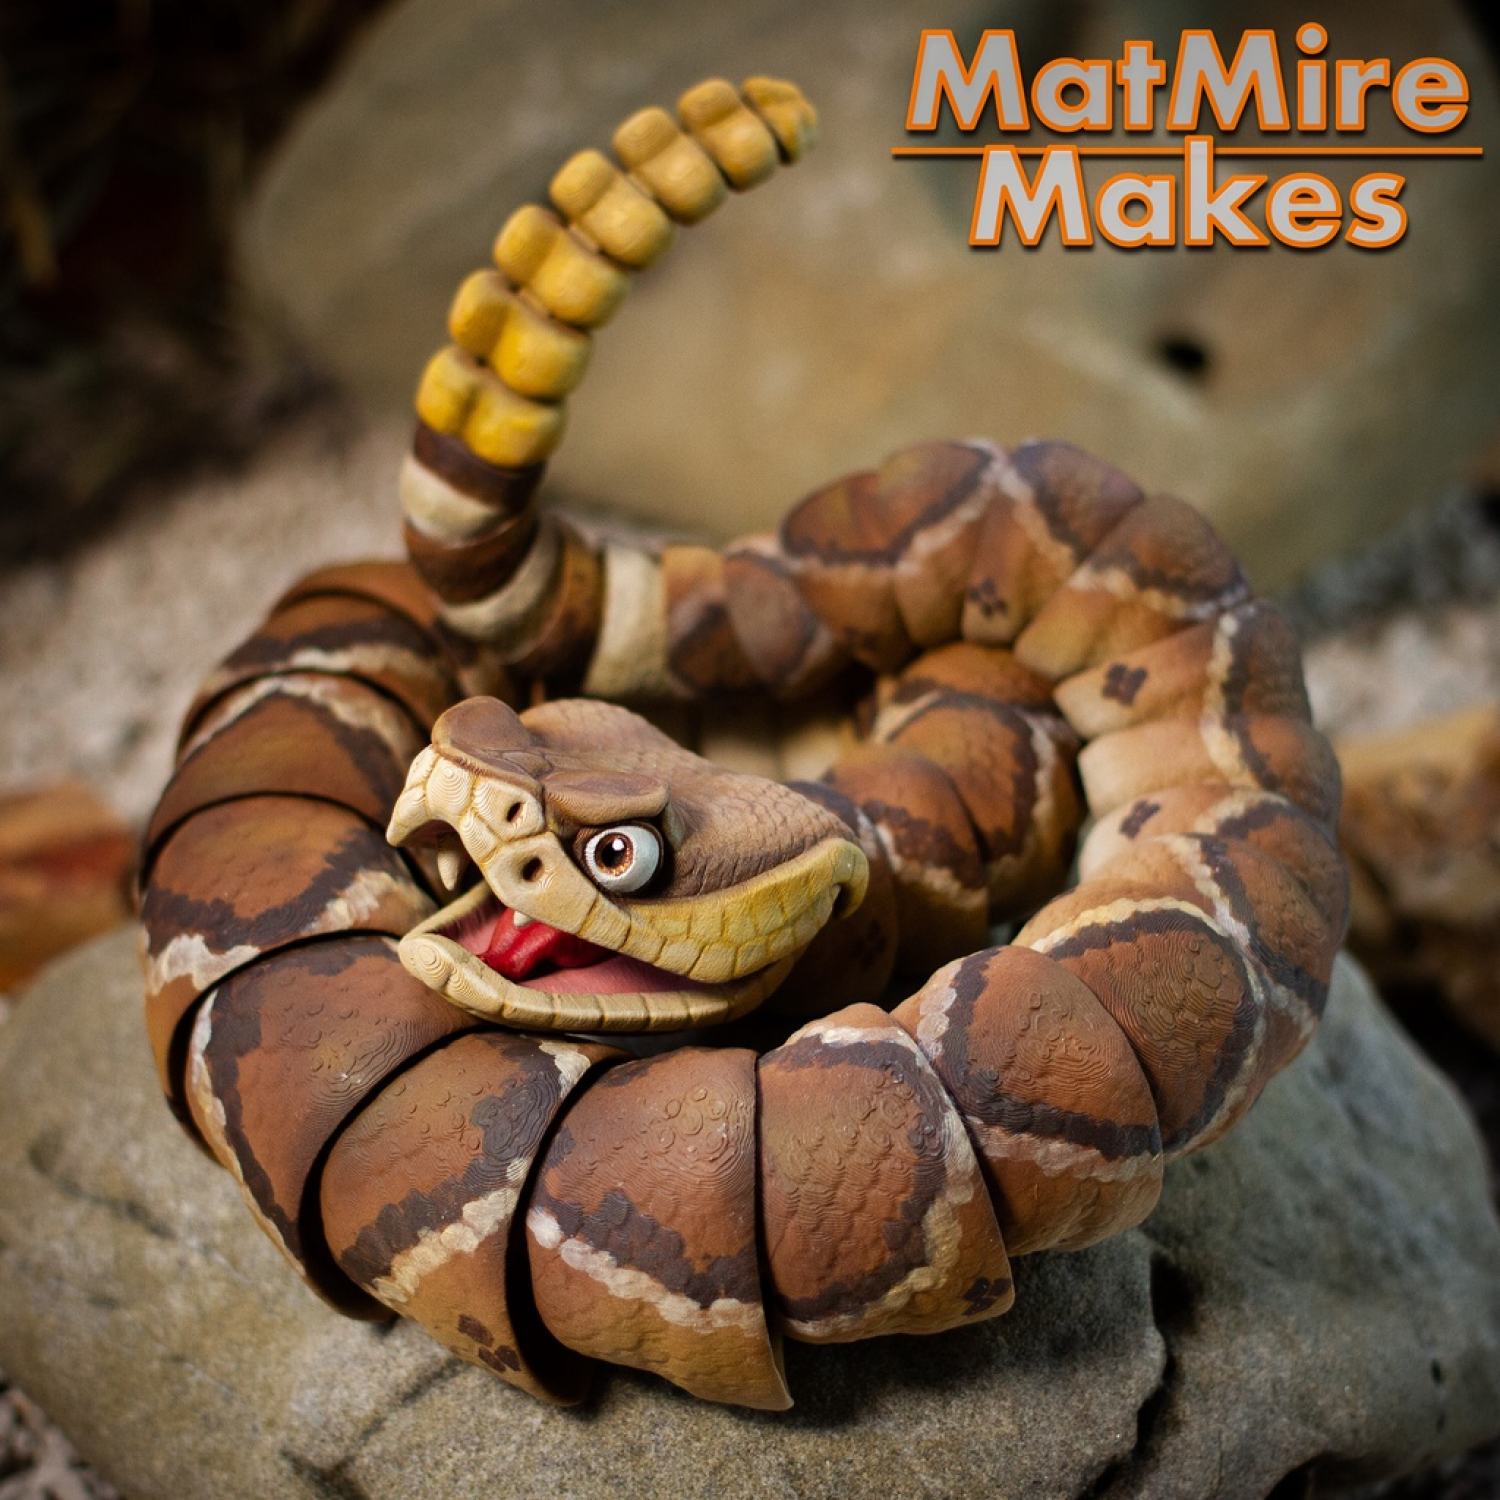 con rắn hổ mang chúa 3d: Hình minh họa có sẵn 404655550 | Shutterstock